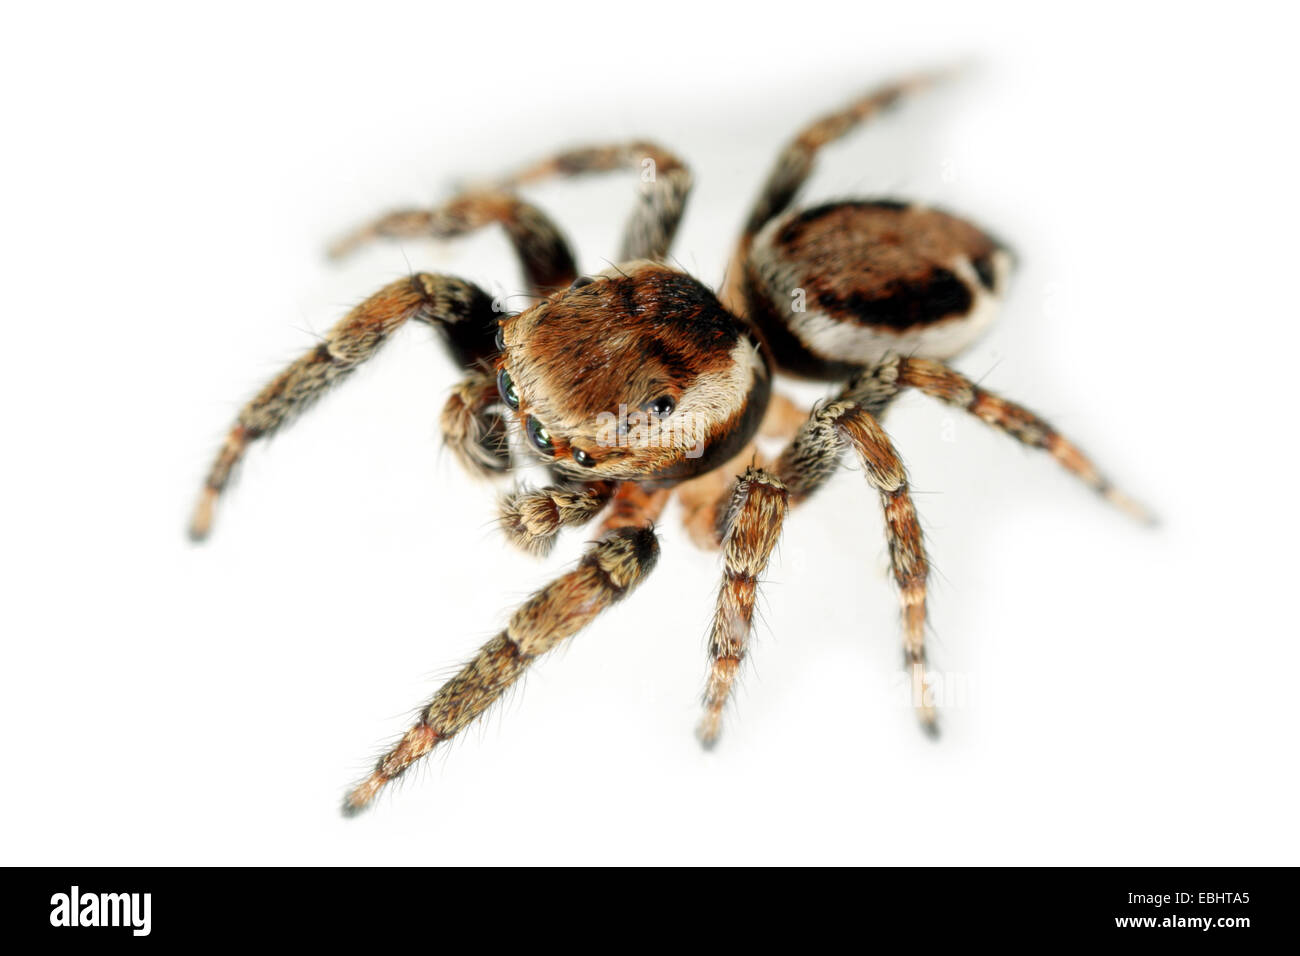 Ein männlicher jumping Spider (Evarcha falcata) auf weißem Hintergrund. Springen spinnen gehören zur Familie der. Stockfoto